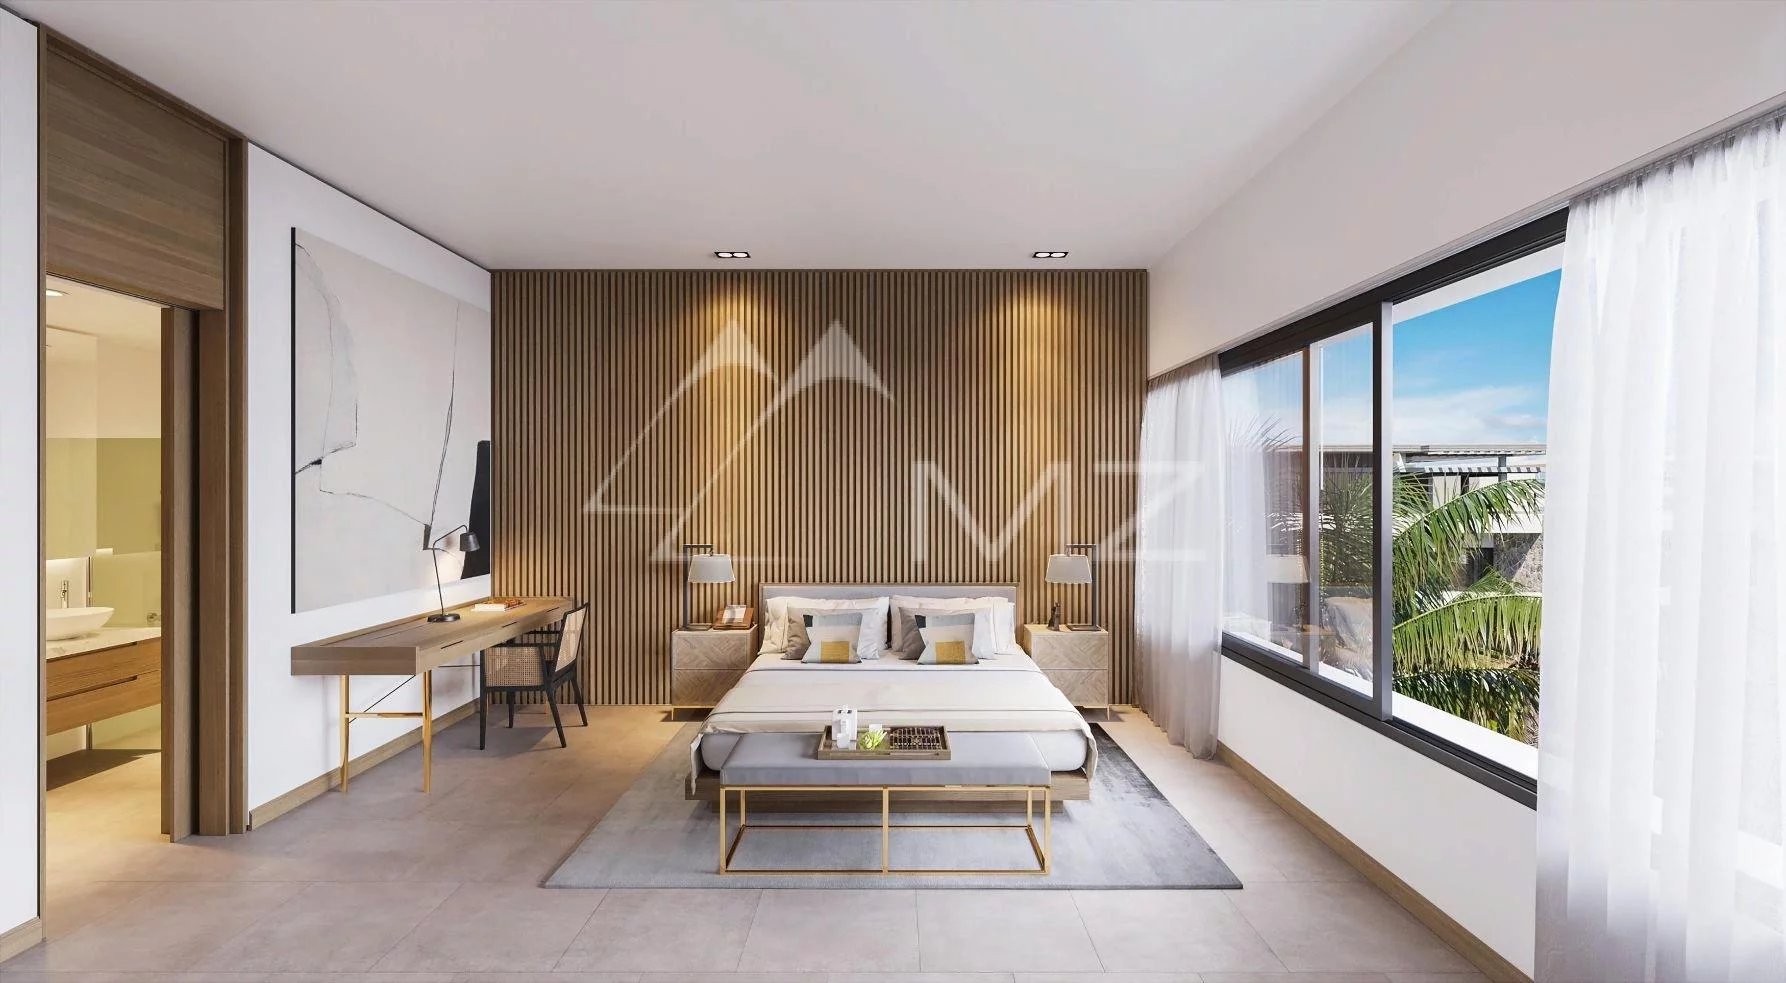 Penthouse kombiniert Moderne und Eleganz - Pereybere